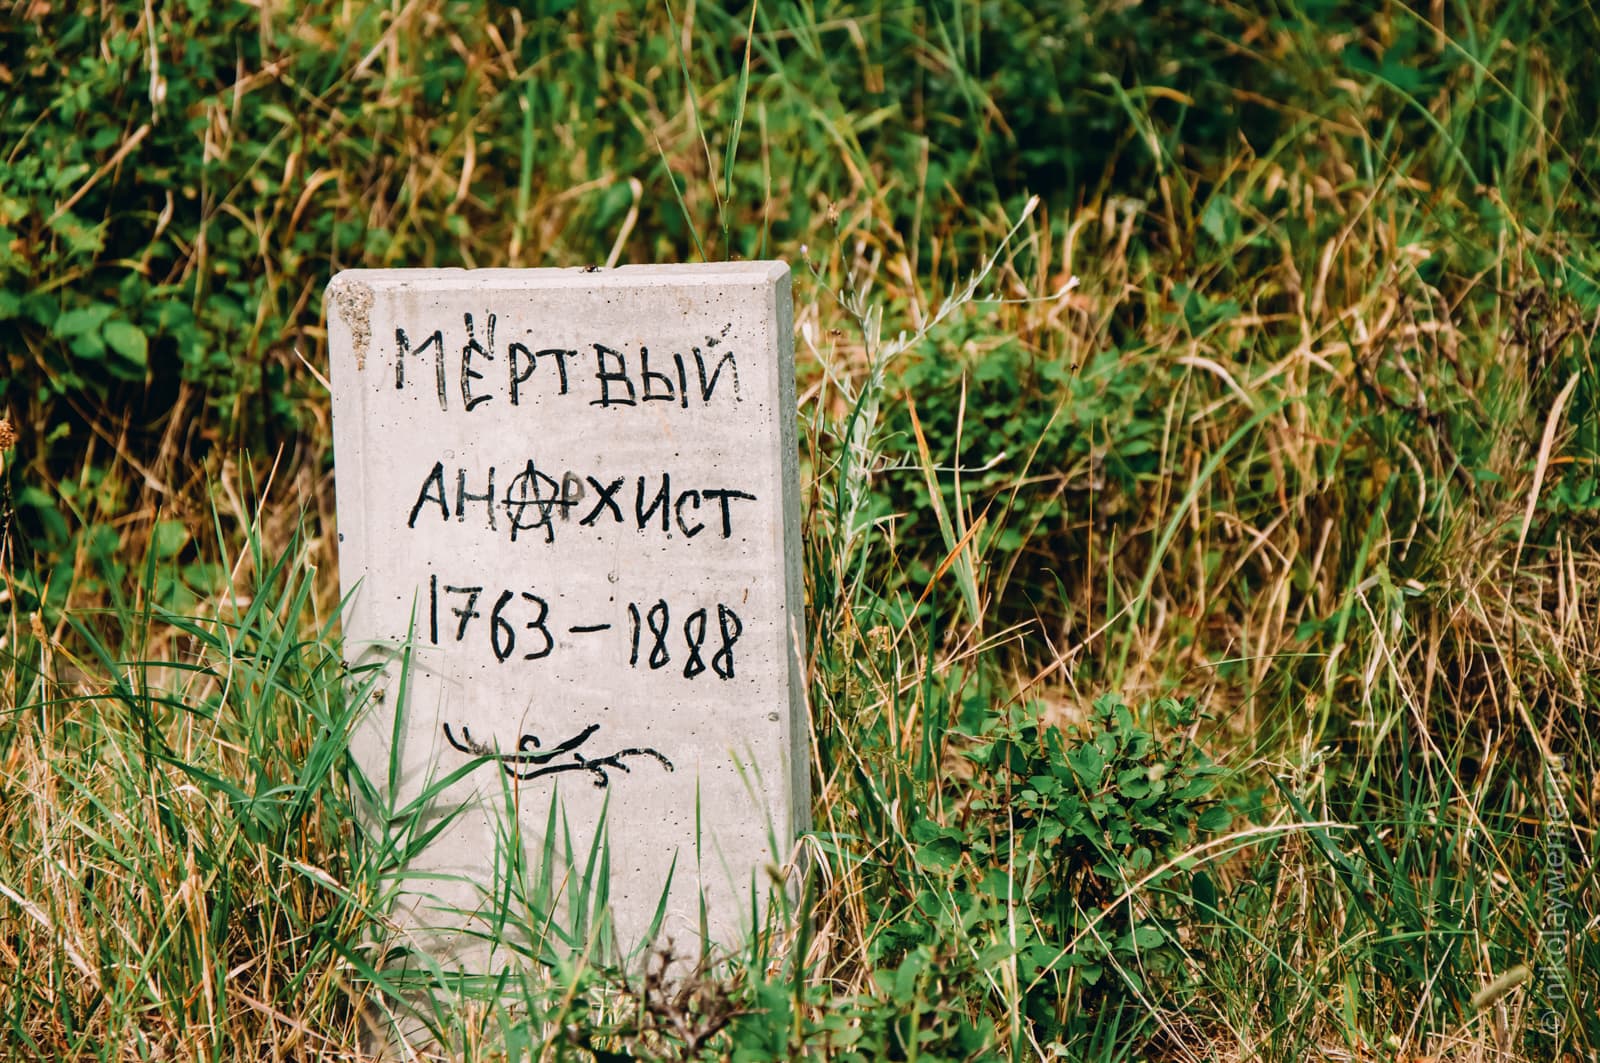 Серая плита стоит в траве. Надпись чёрным маркером на плите: "Мёртвый анархист. 1763-1888«